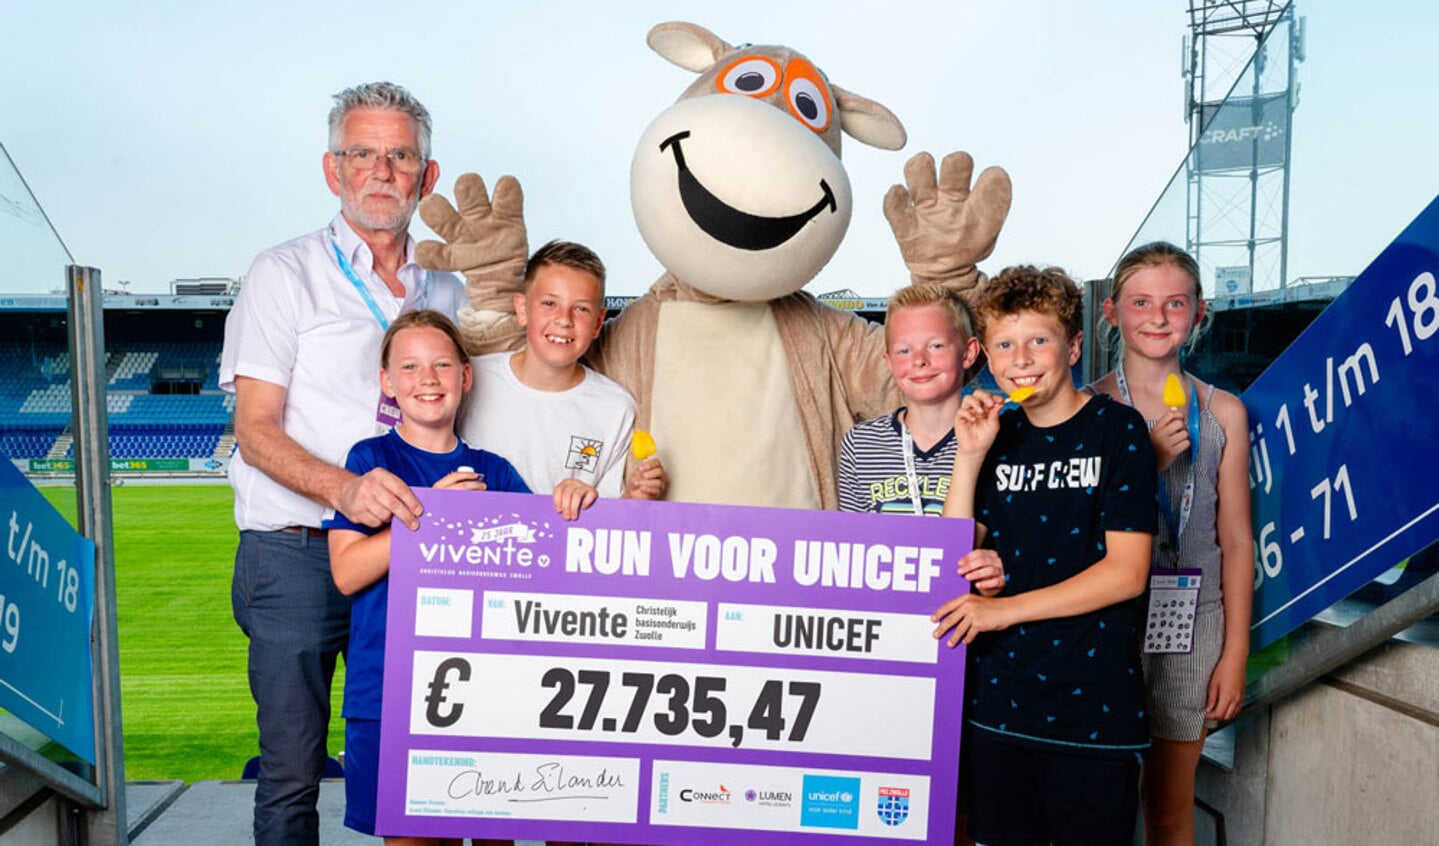 Arend Eilander met leerlingen van Vivente en de cheque van 27735,47 voor UNICEF 